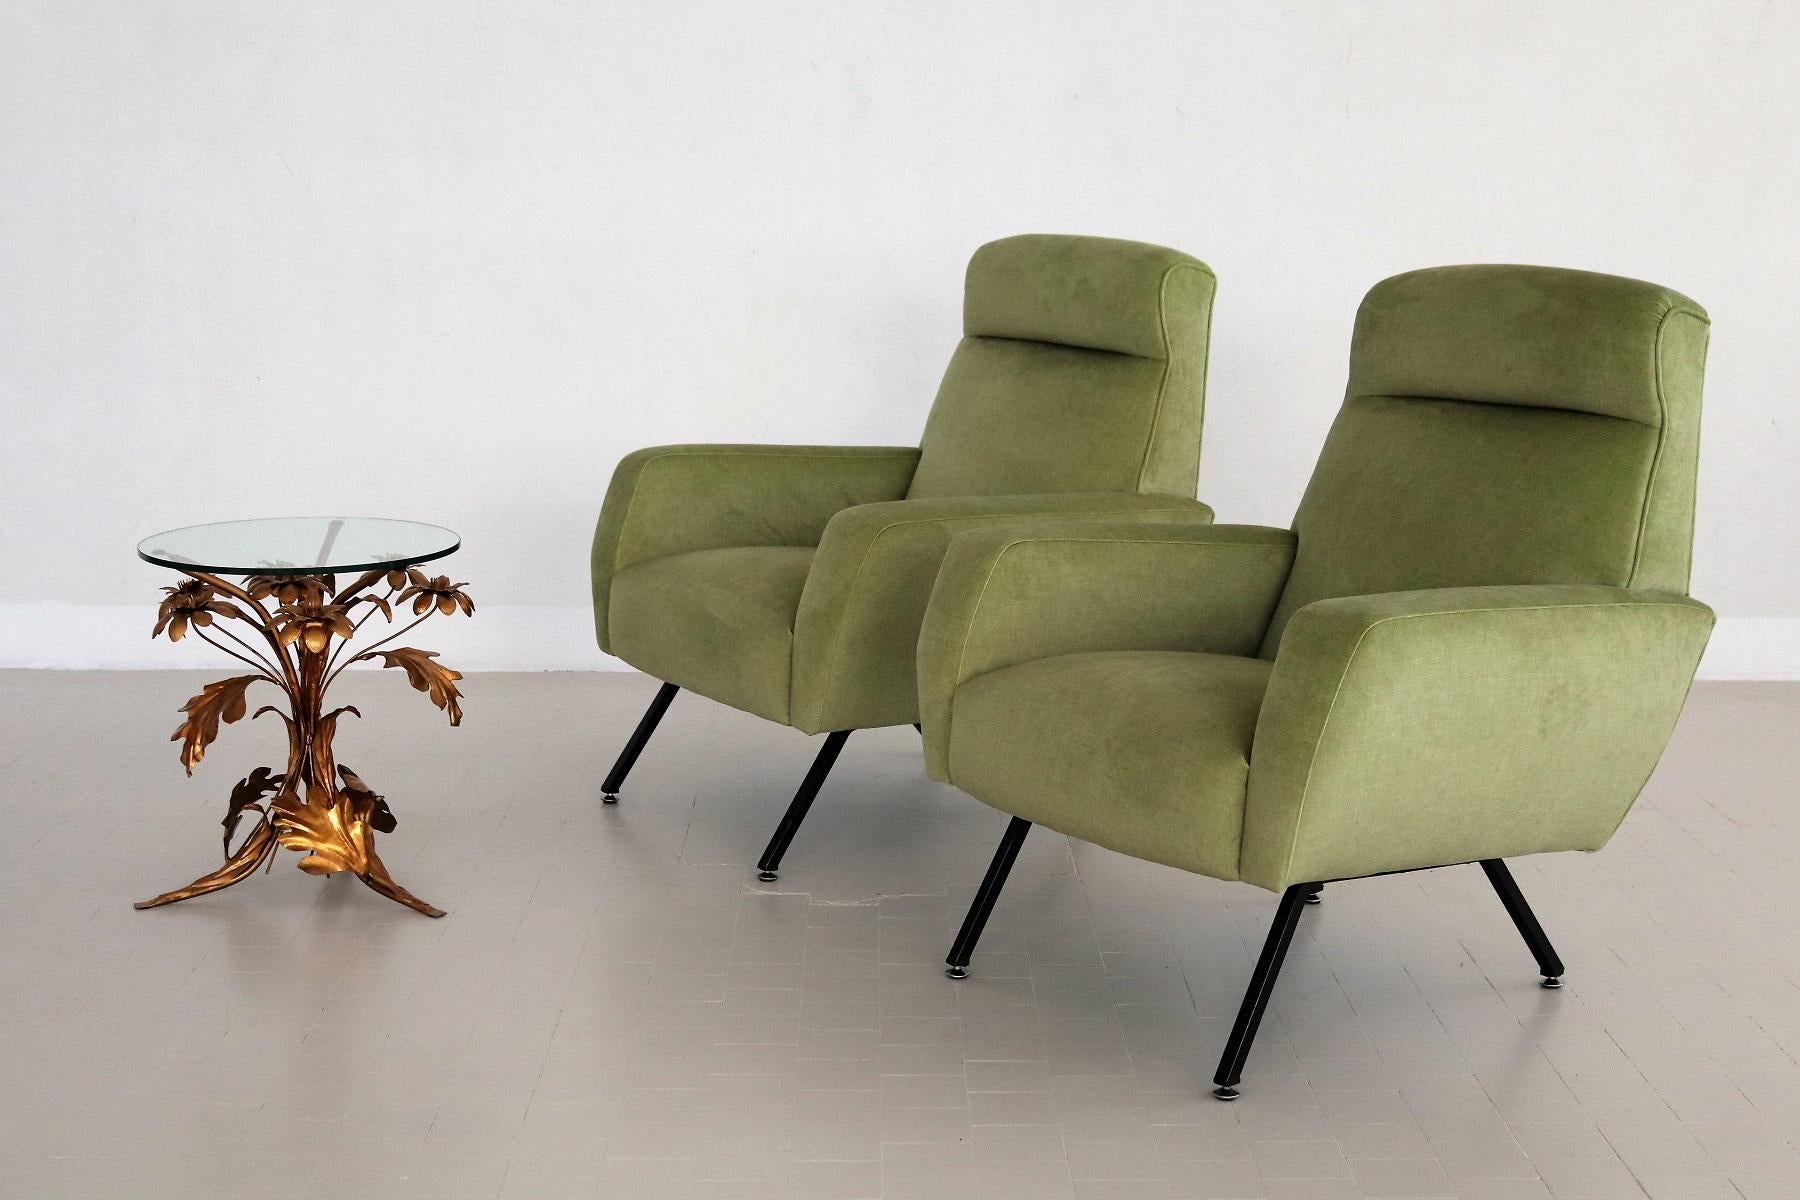 Mid-Century Modern Italian Midcentury Armchairs Re-Upholstered in Green Velvet, 1960s For Sale